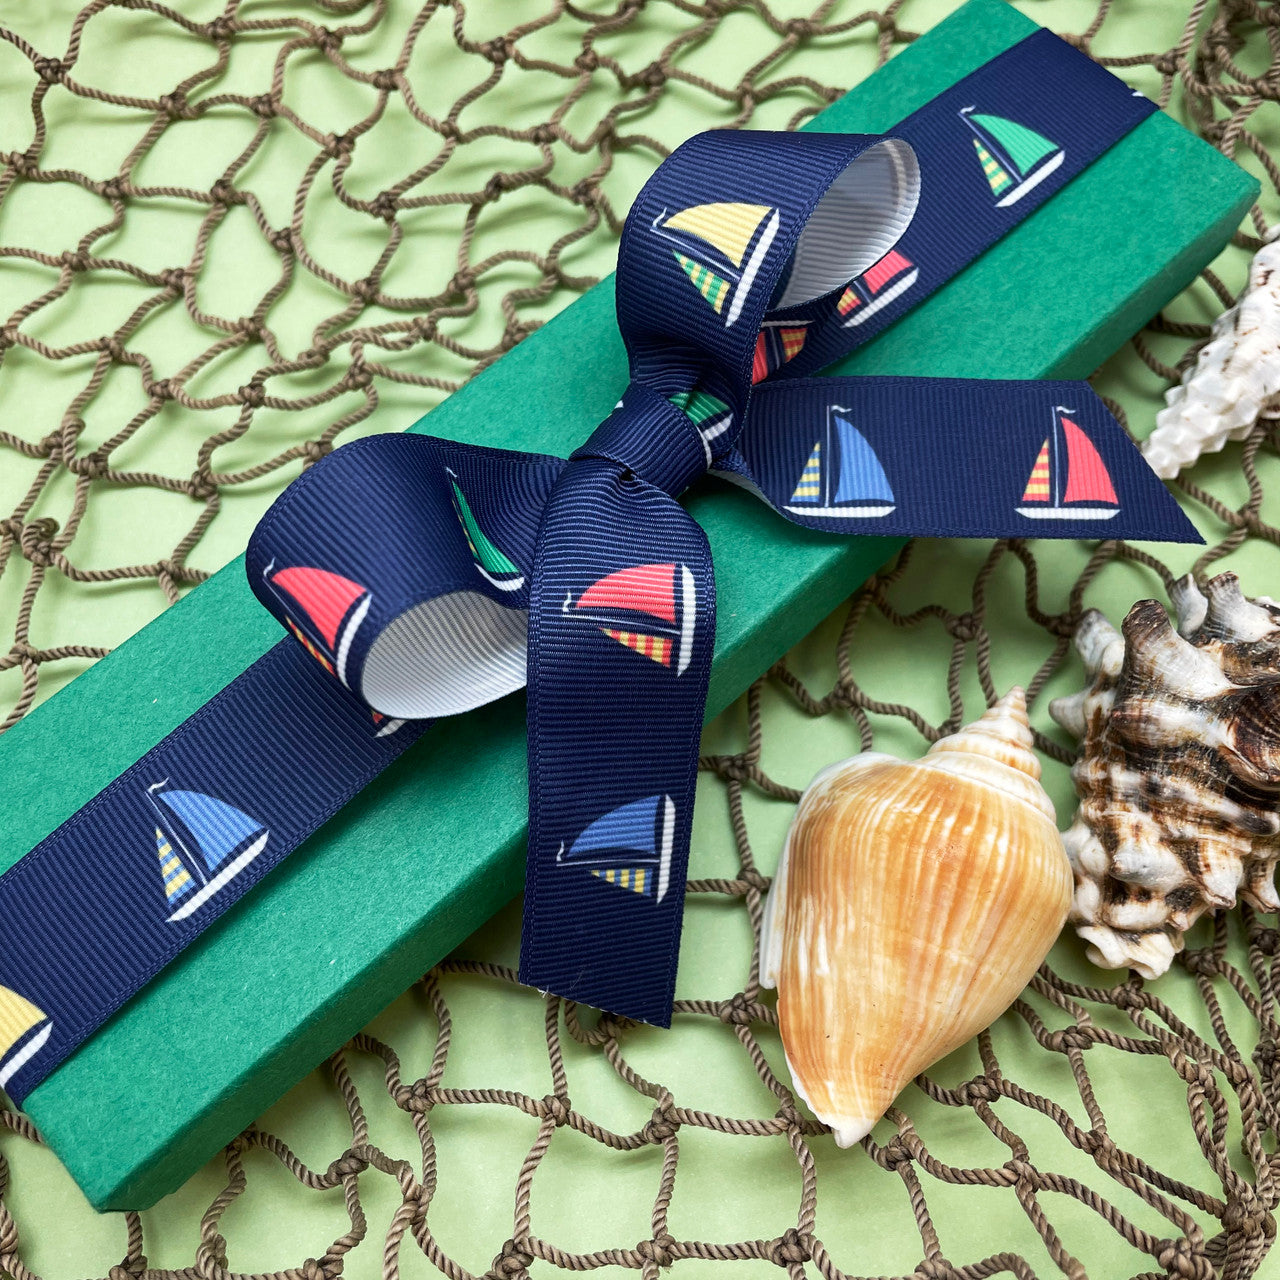 Sailboat ribbon printed on 7/8" grosgrain